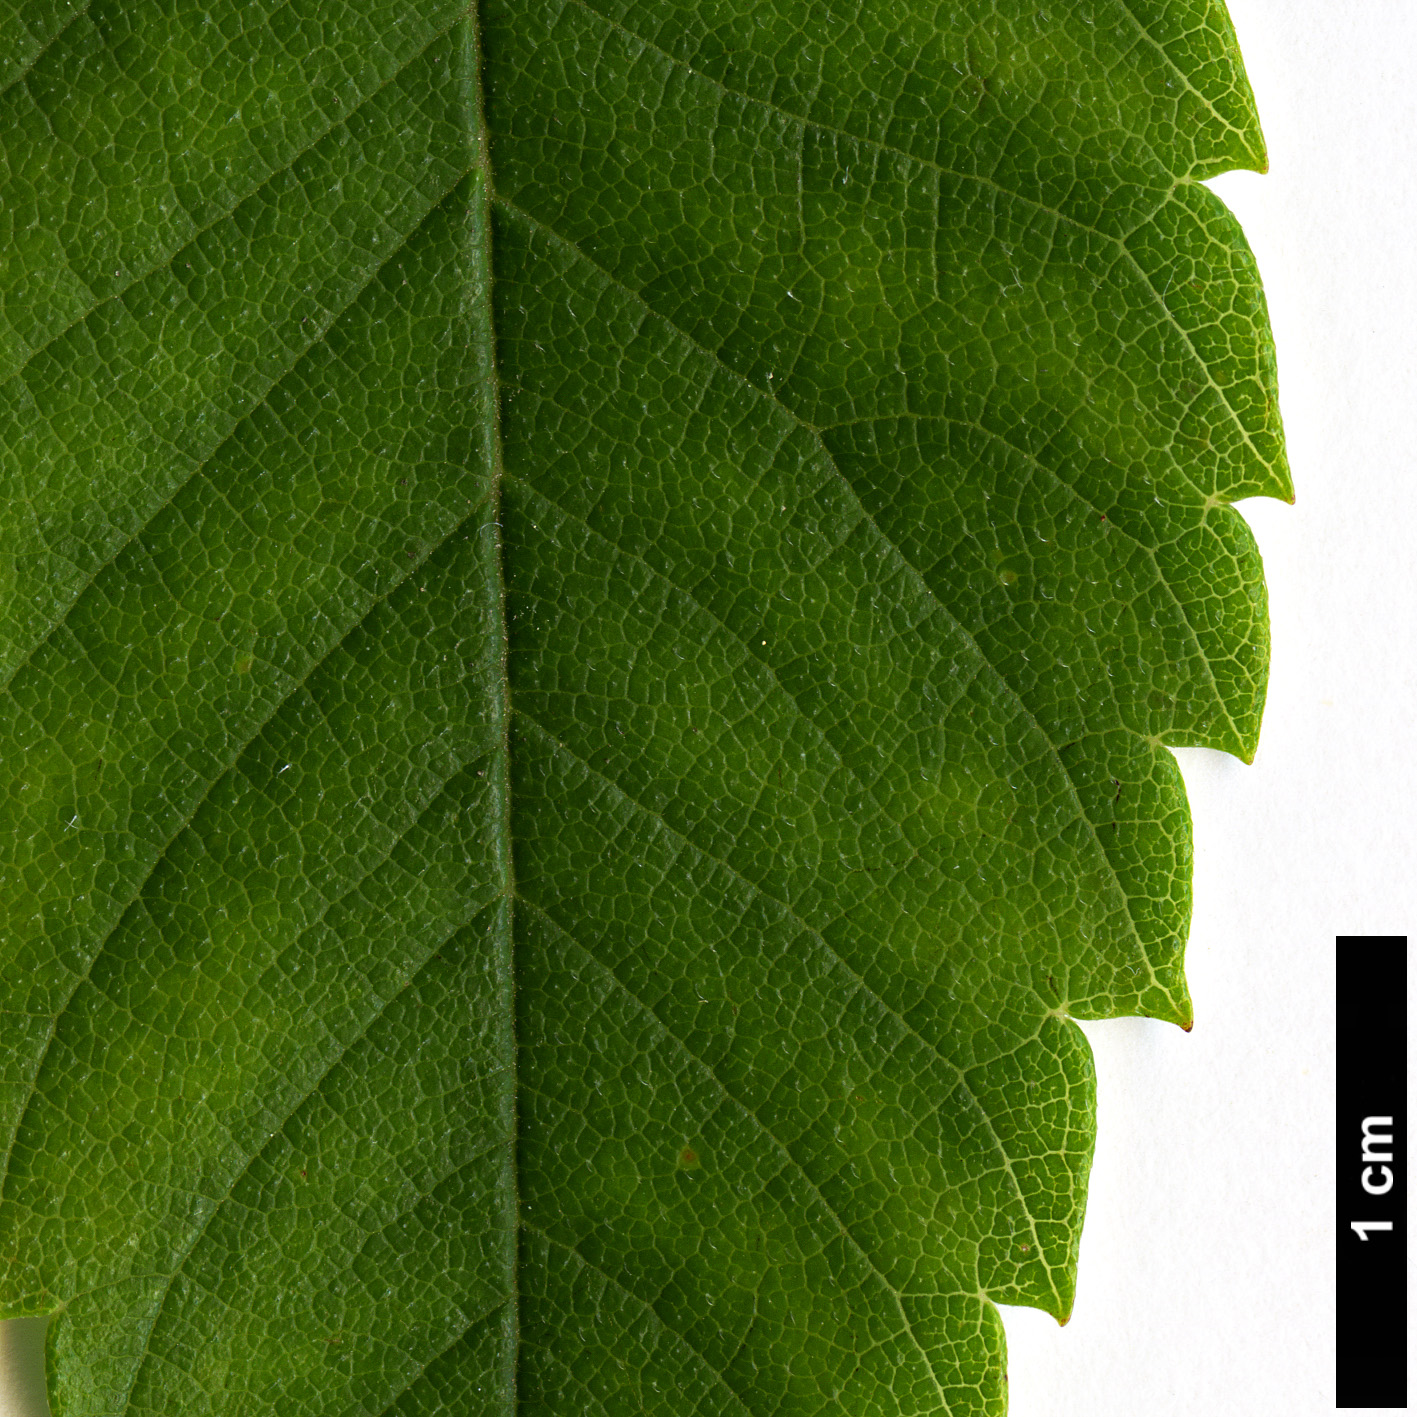 High resolution image: Family: Ulmaceae - Genus: Zelkova - Taxon: schneideriana